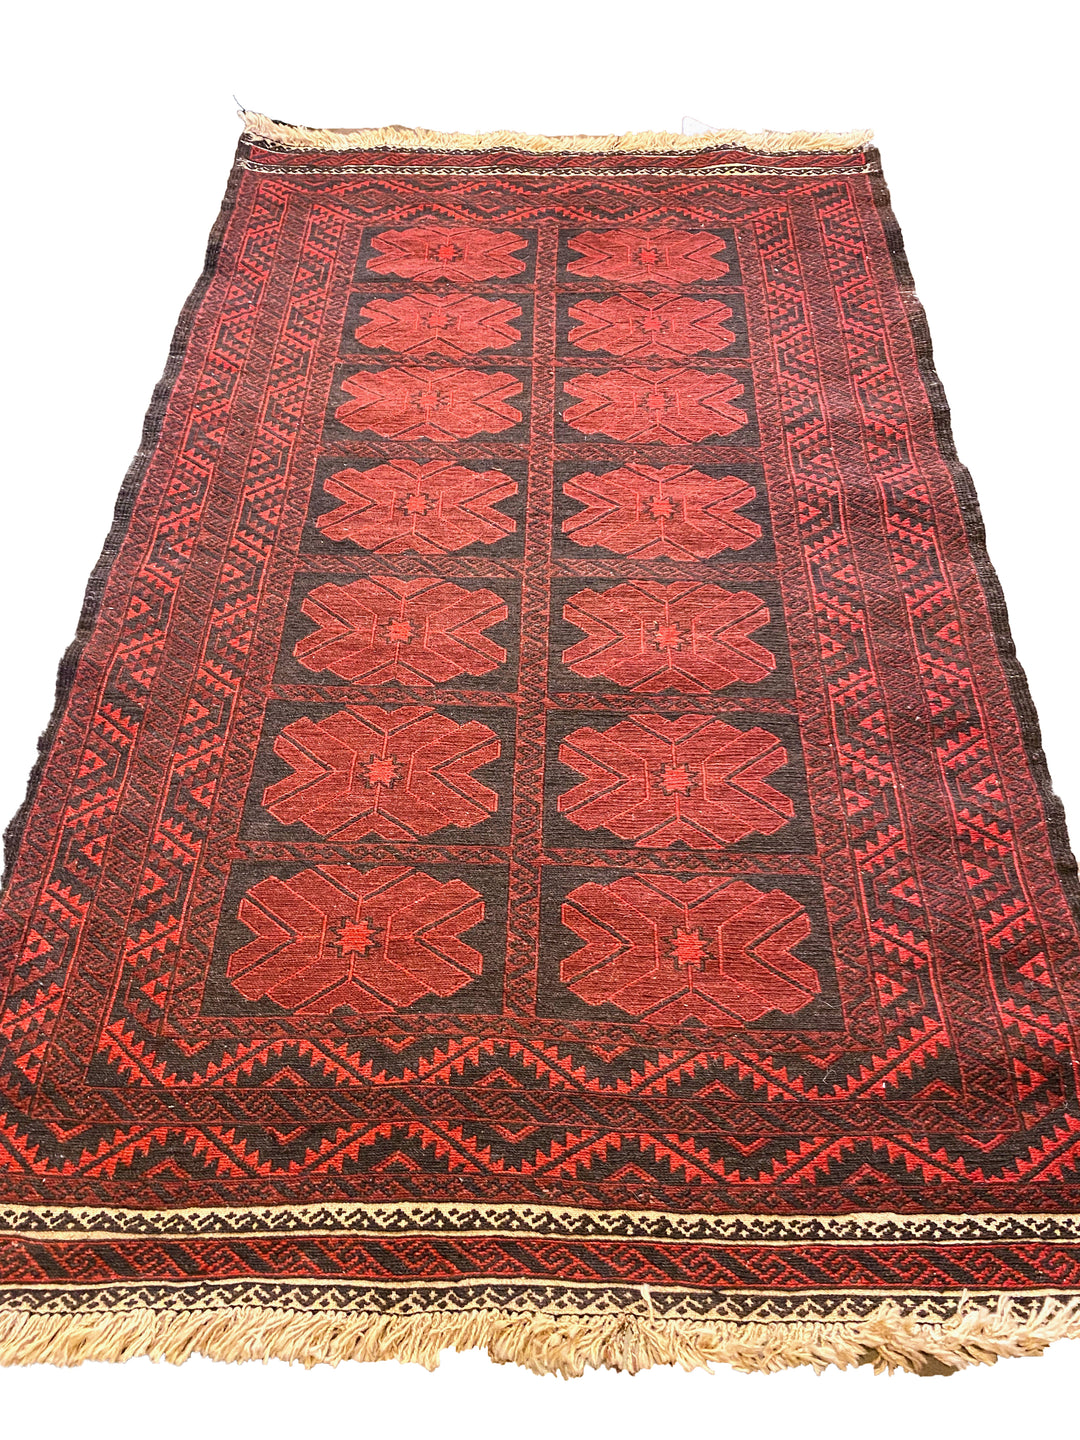 ABC - Size: 6 x 3.10 - Imam Carpet Co